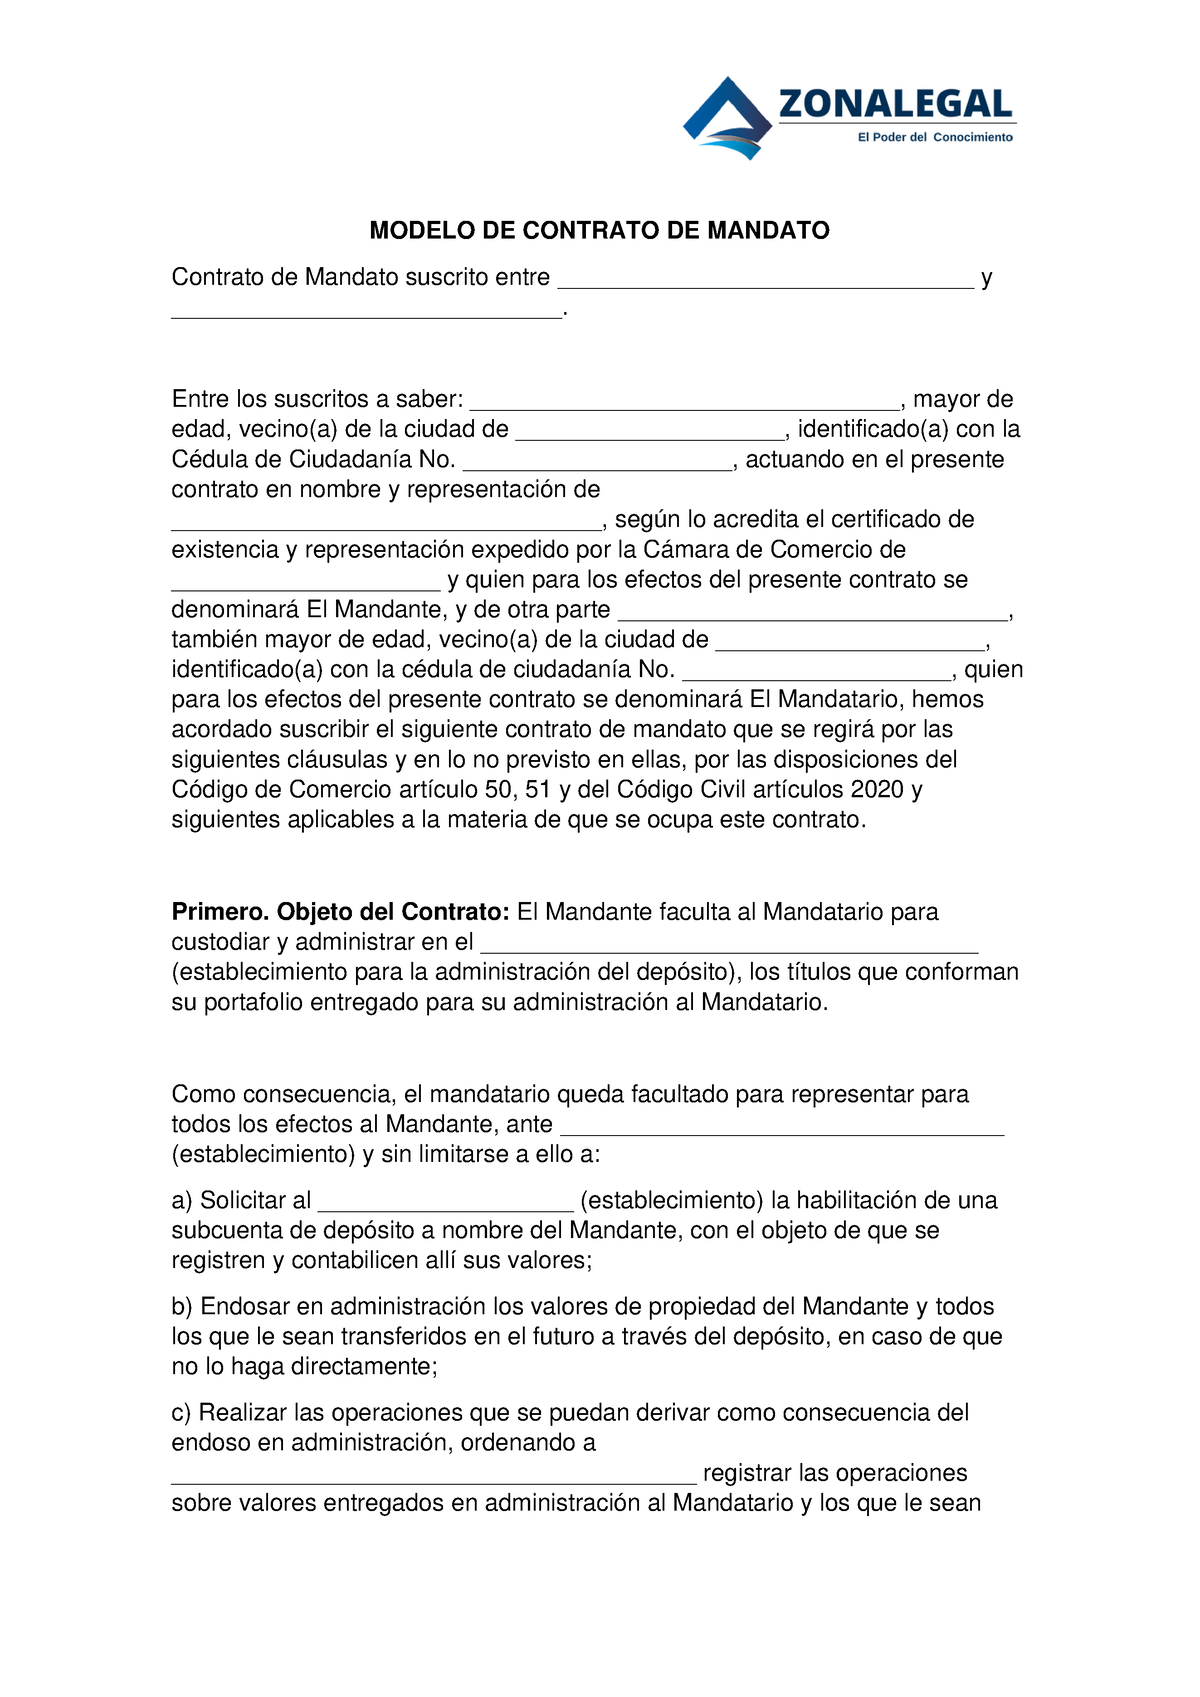 Modelo DE Contrato DE Mandato - MODELO DE CONTRATO DE MANDATO Contrato de  Mandato suscrito entre - Studocu